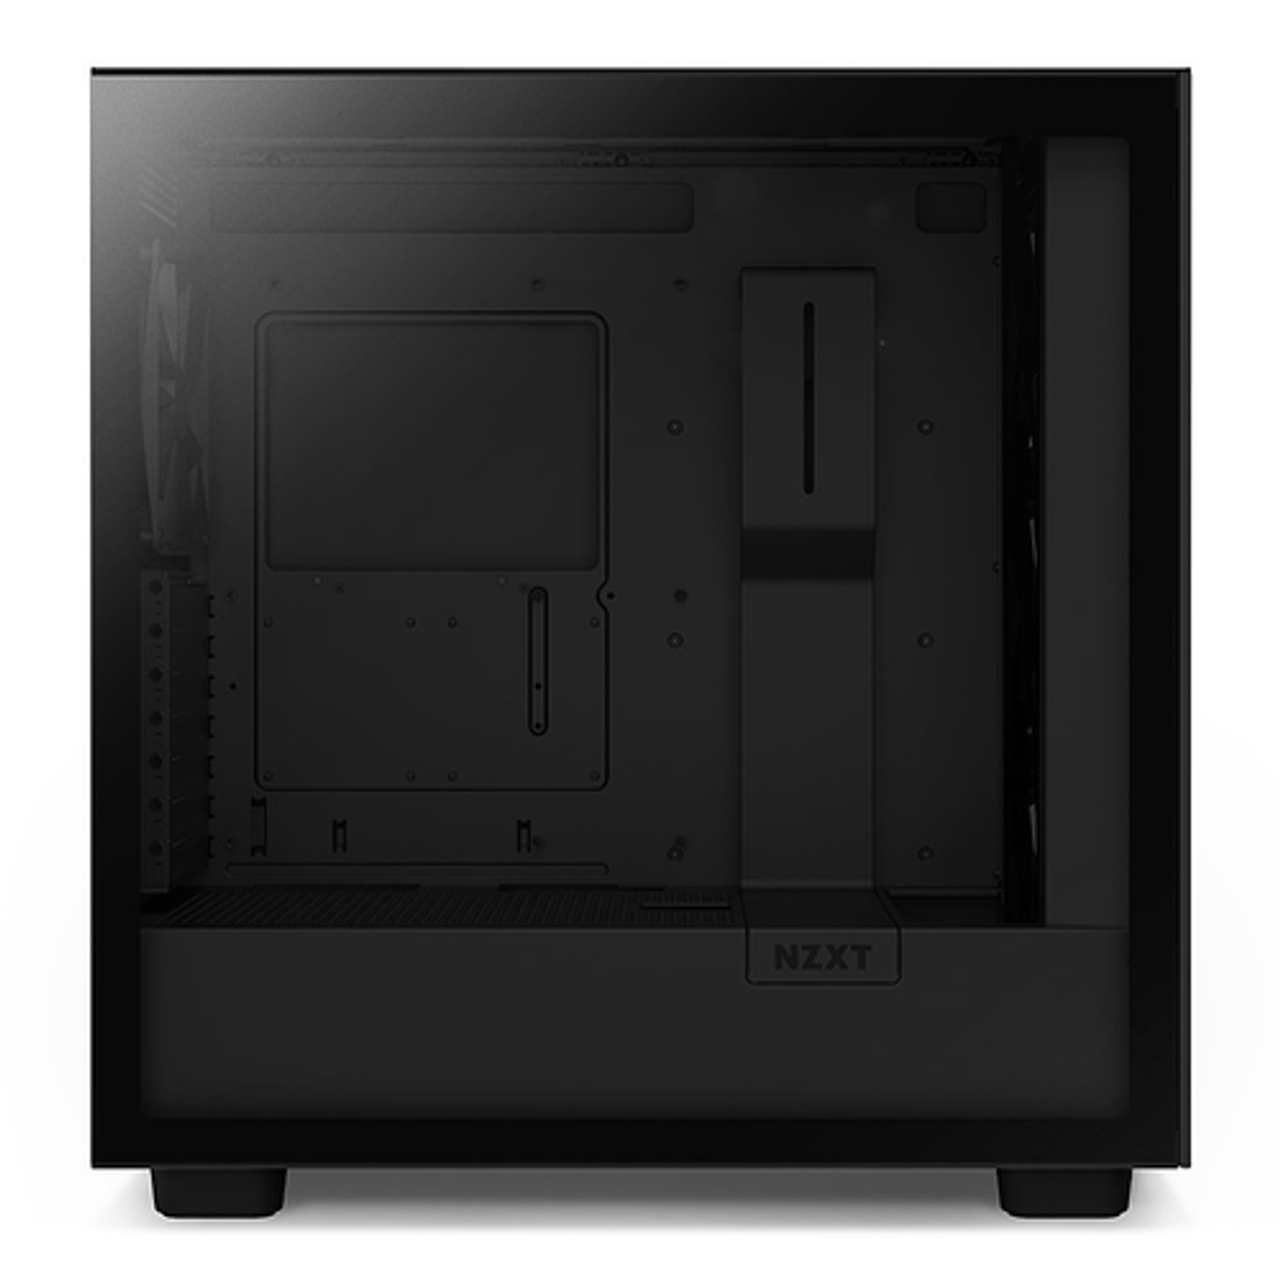 NZXT - H7 Elite Premium ATX Mid-Tower Case - Black